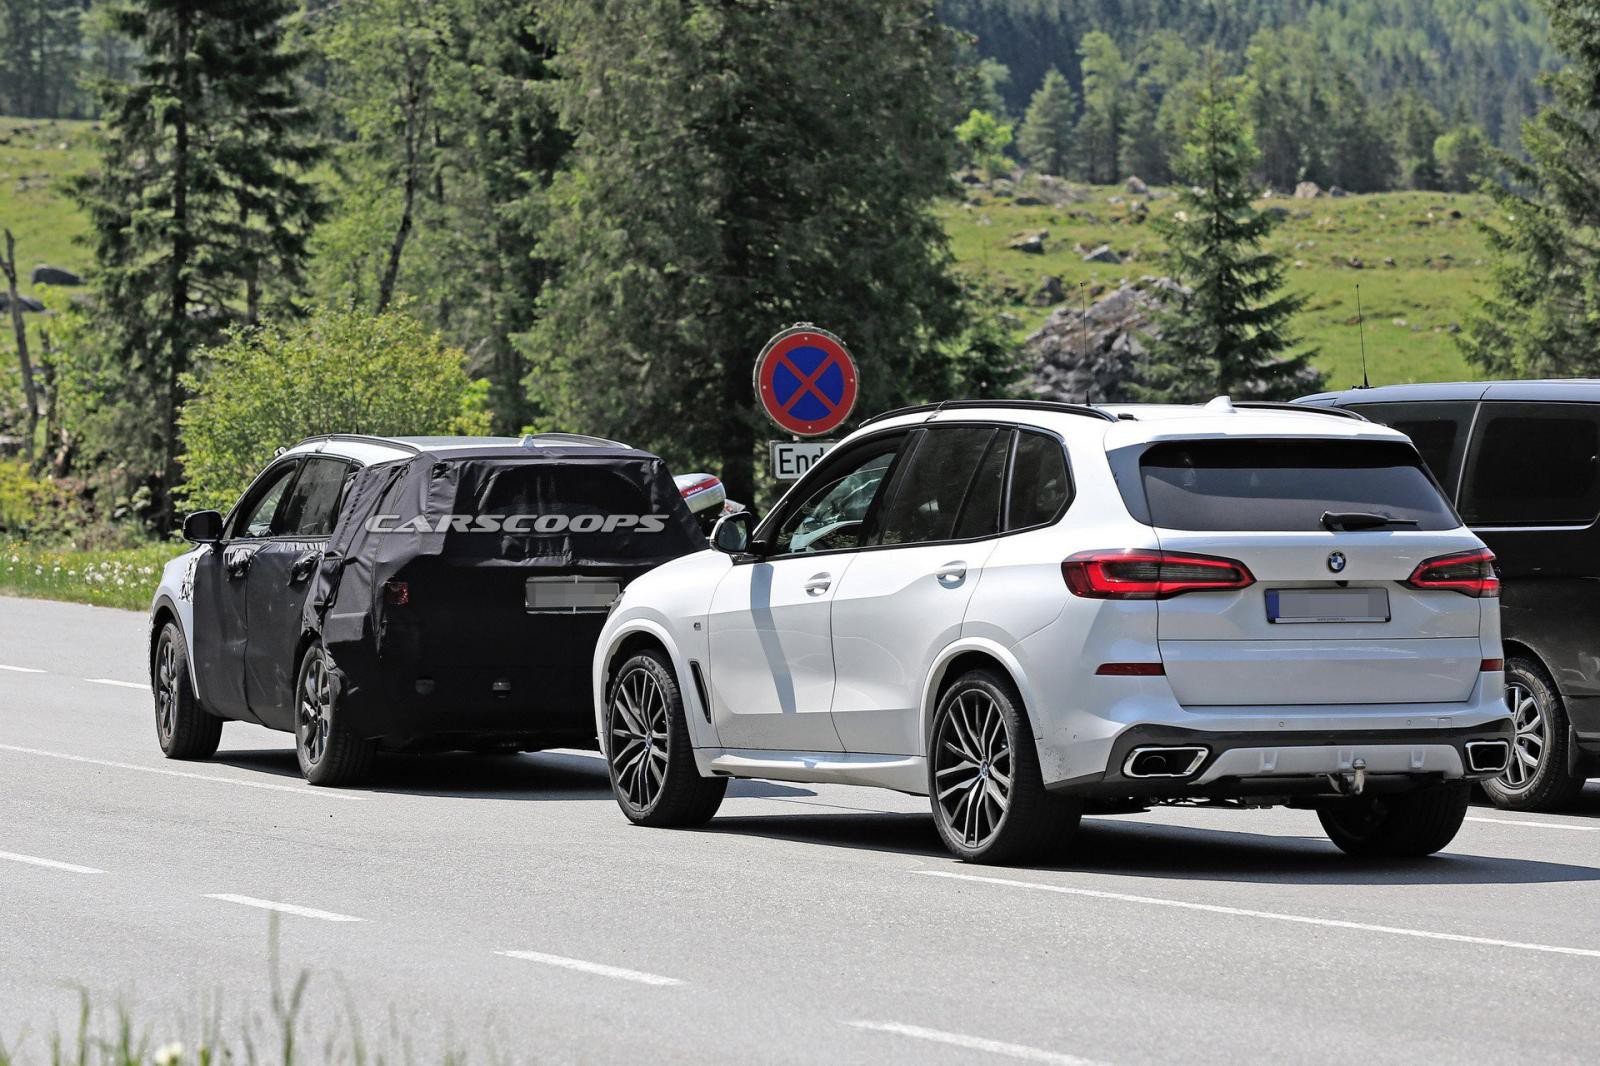 Kia Sorento xuất hiện cùng BMW X5 tại đường chạy thử nghiệm